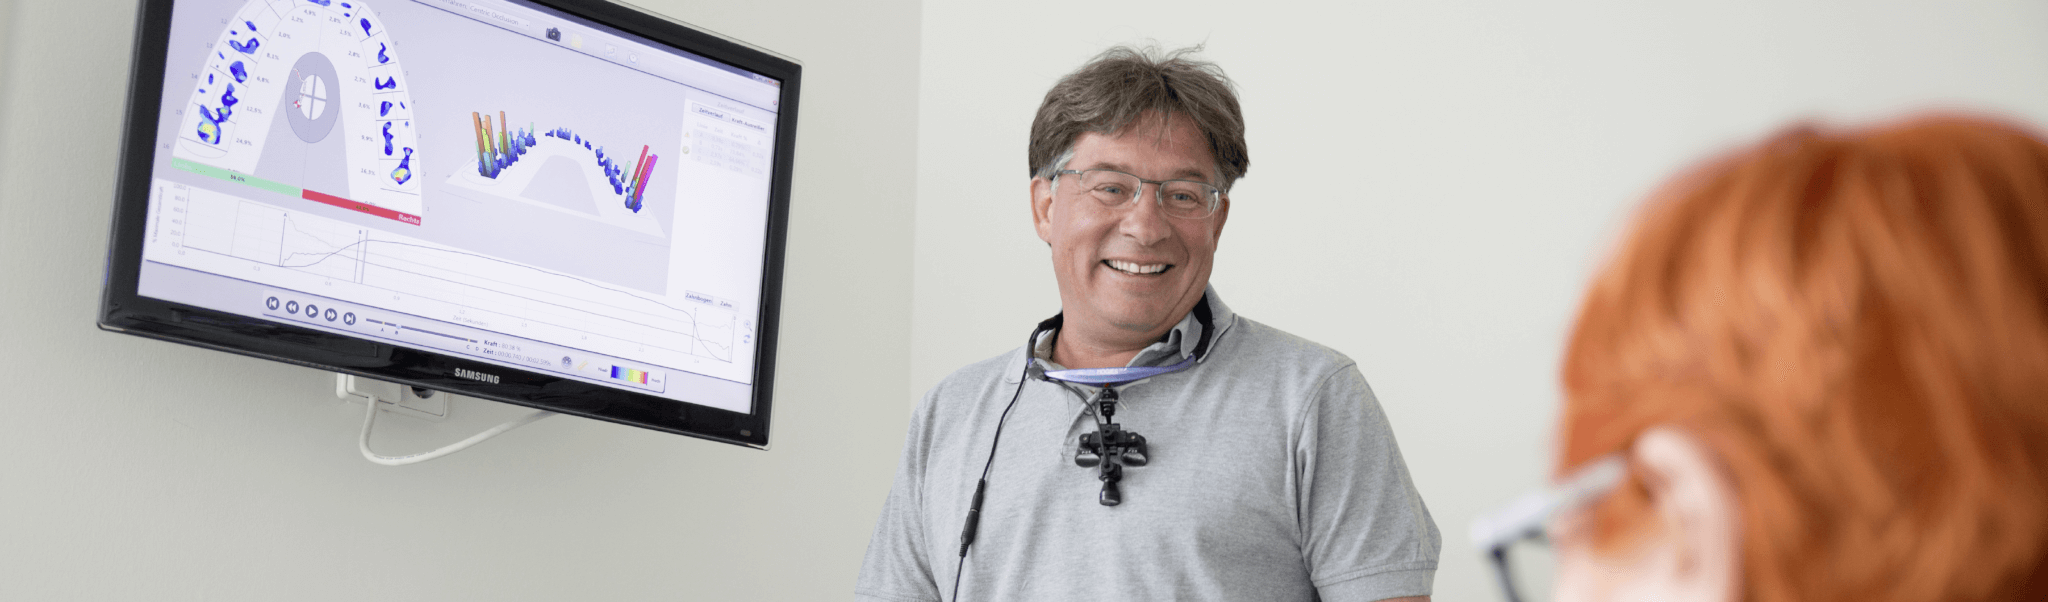 Prophylaxe - Dr. Rentschler lachen mit Patientin im Gespräch, dahinter ein Bildschirm